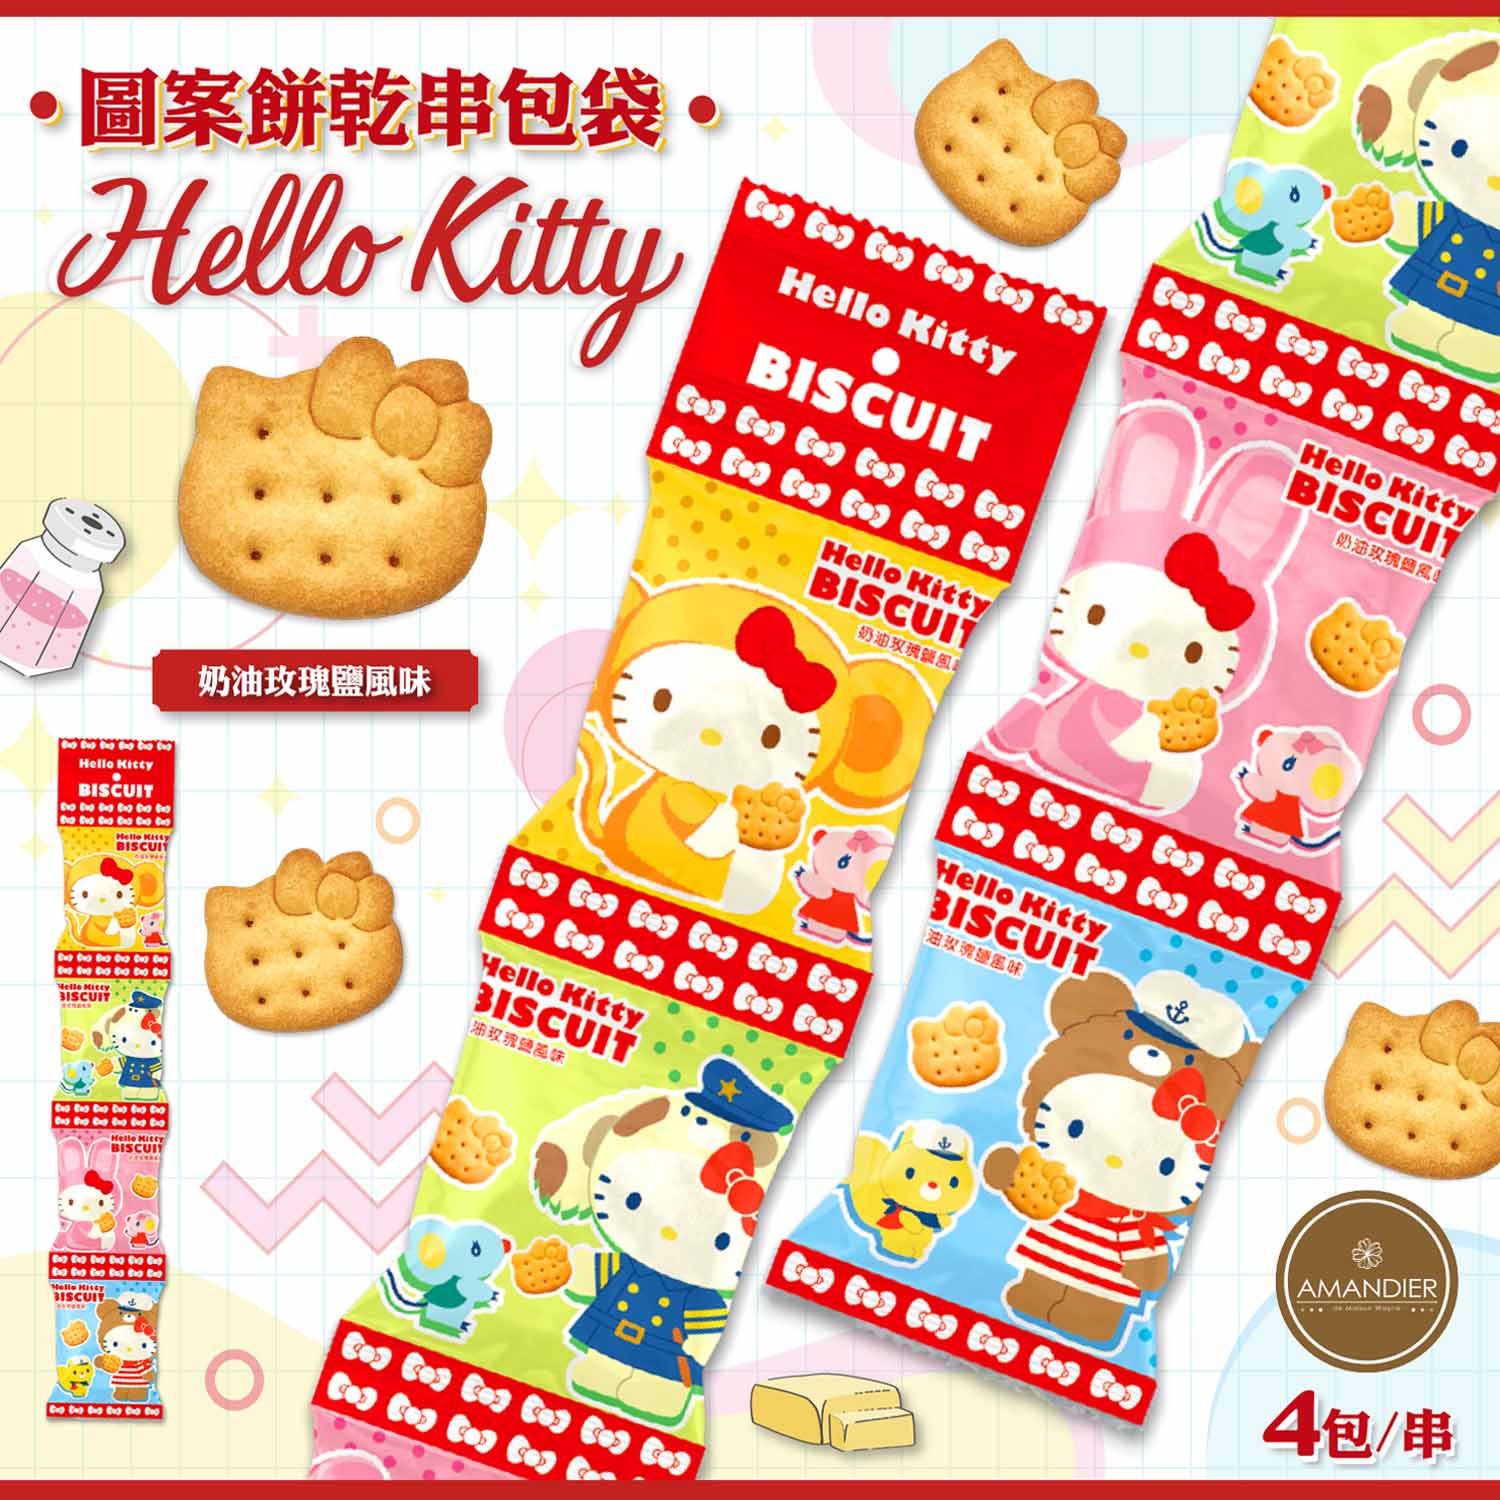 【雅蒙蒂】Hello Kitty圖案餅乾串包袋(奶油玫瑰鹽風味)